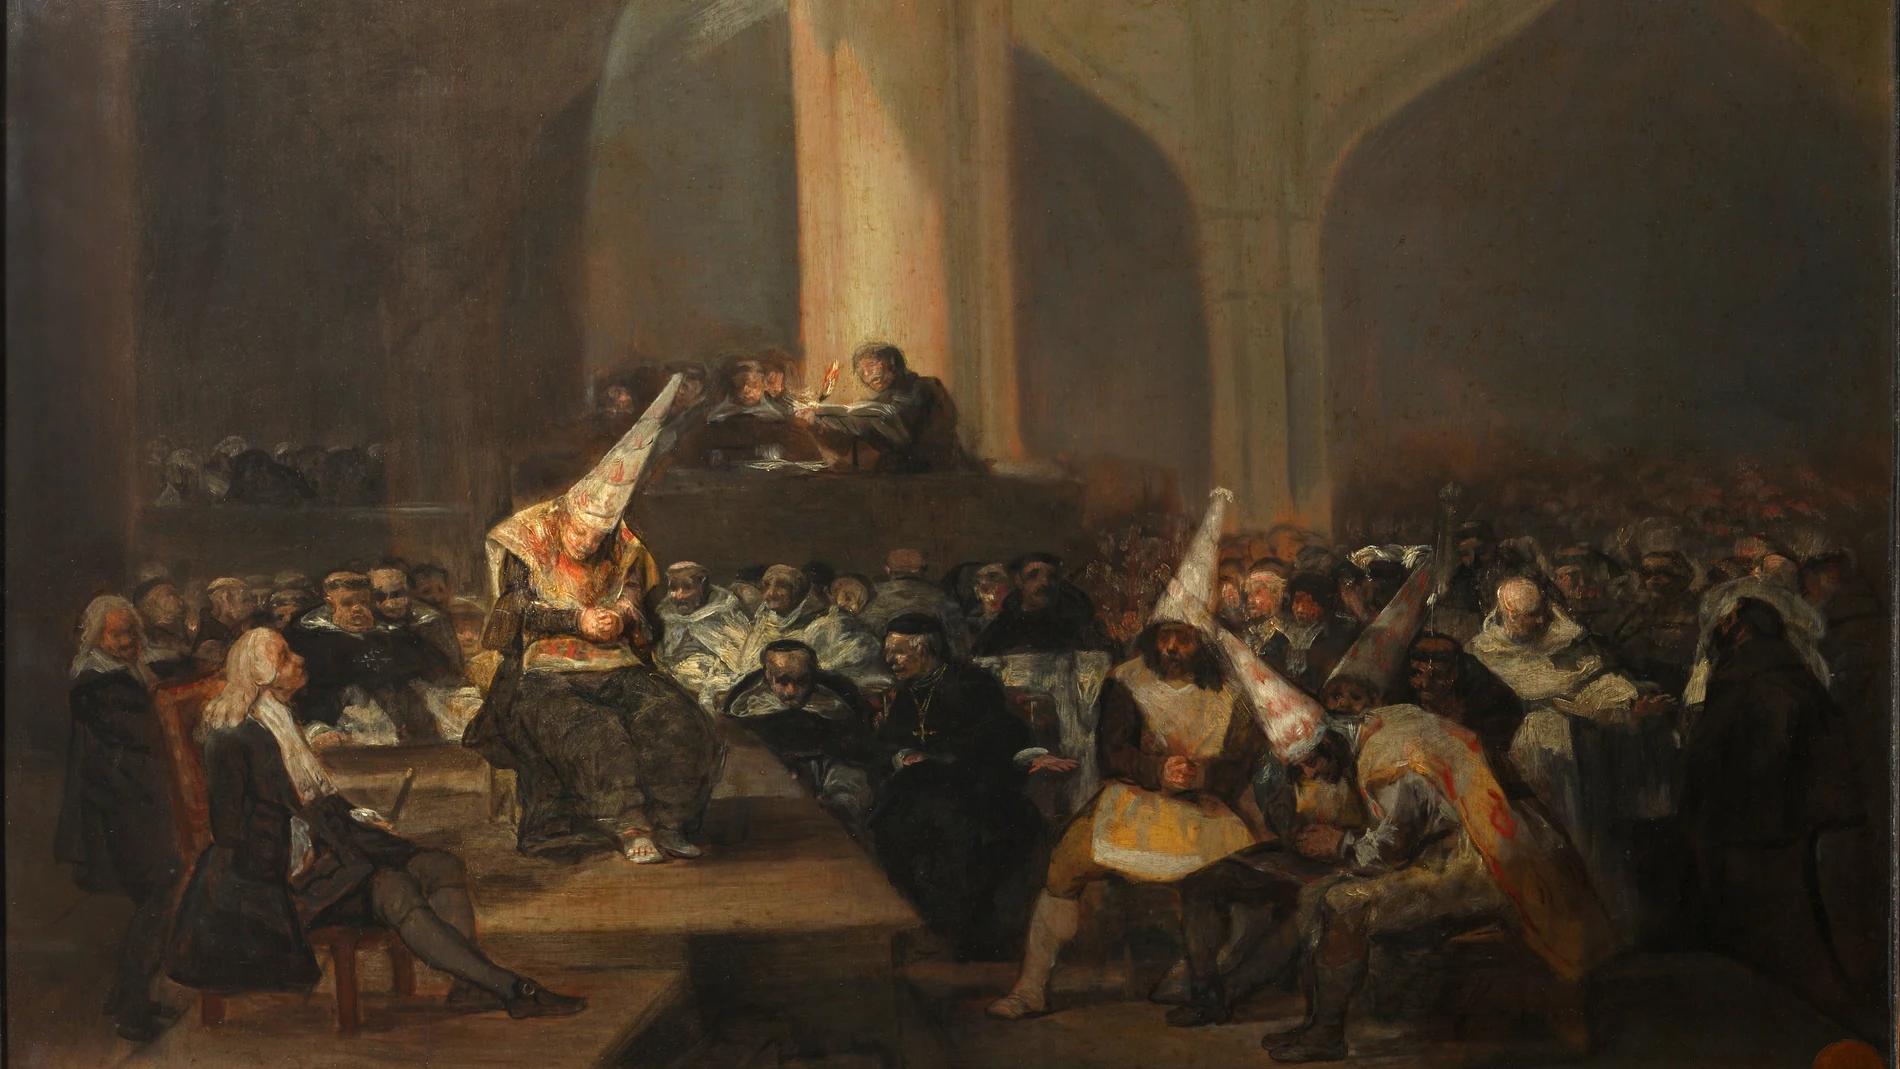 «Auto de fe de la Inquisición», un óleo pintado por Francisco de Goya entre 1812 y 1819